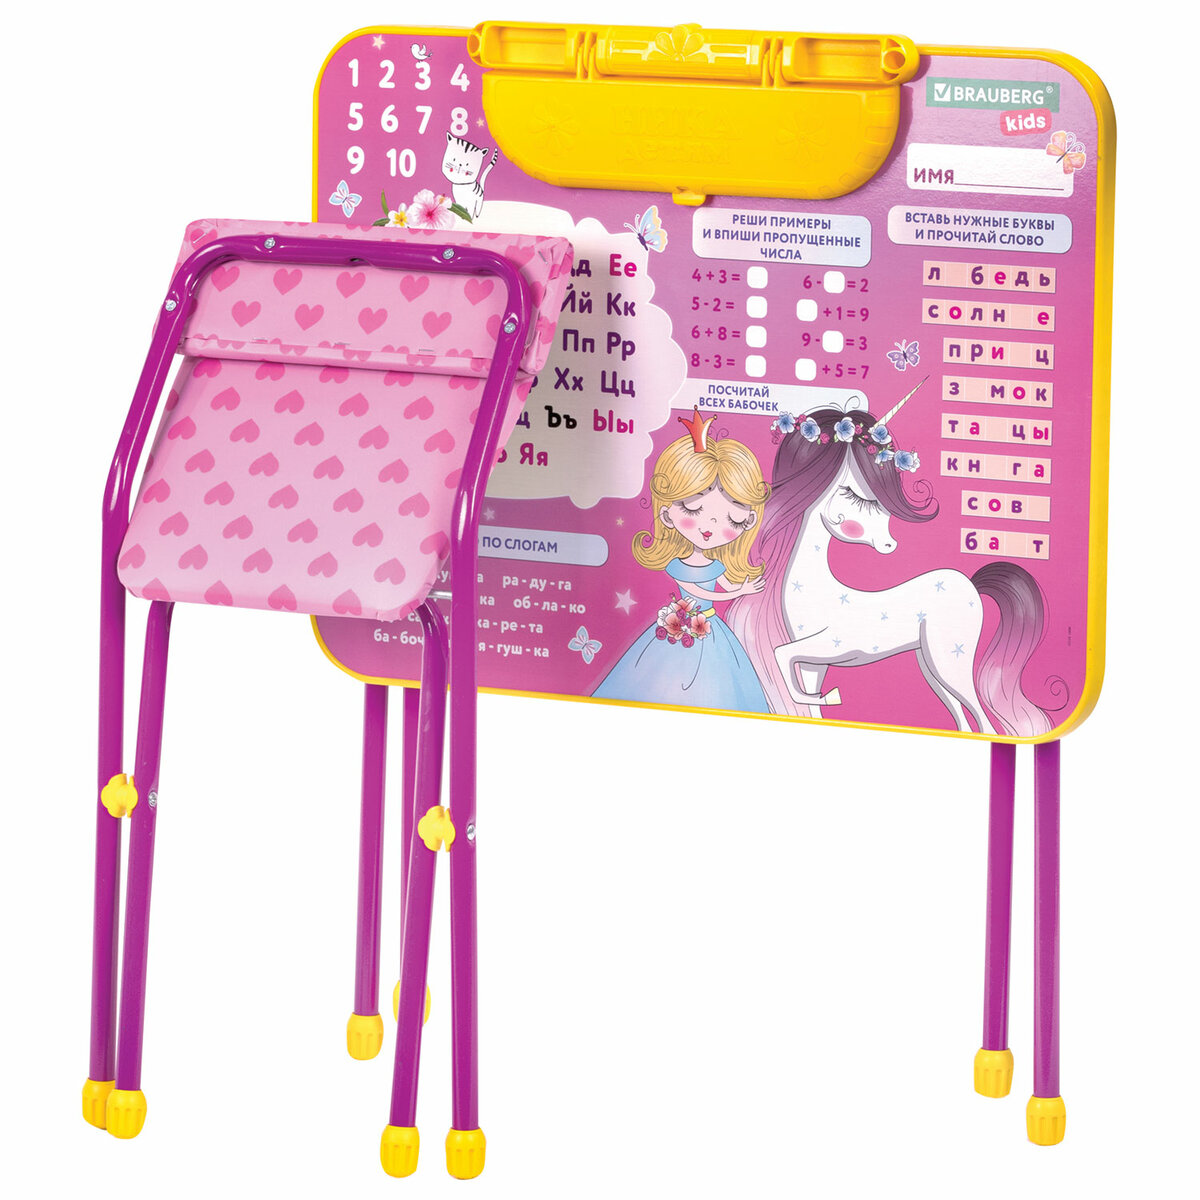 Столик и стульчик детский Brauberg игровой набор для развивающих игр для девочки розовый Принцесса - фото 12